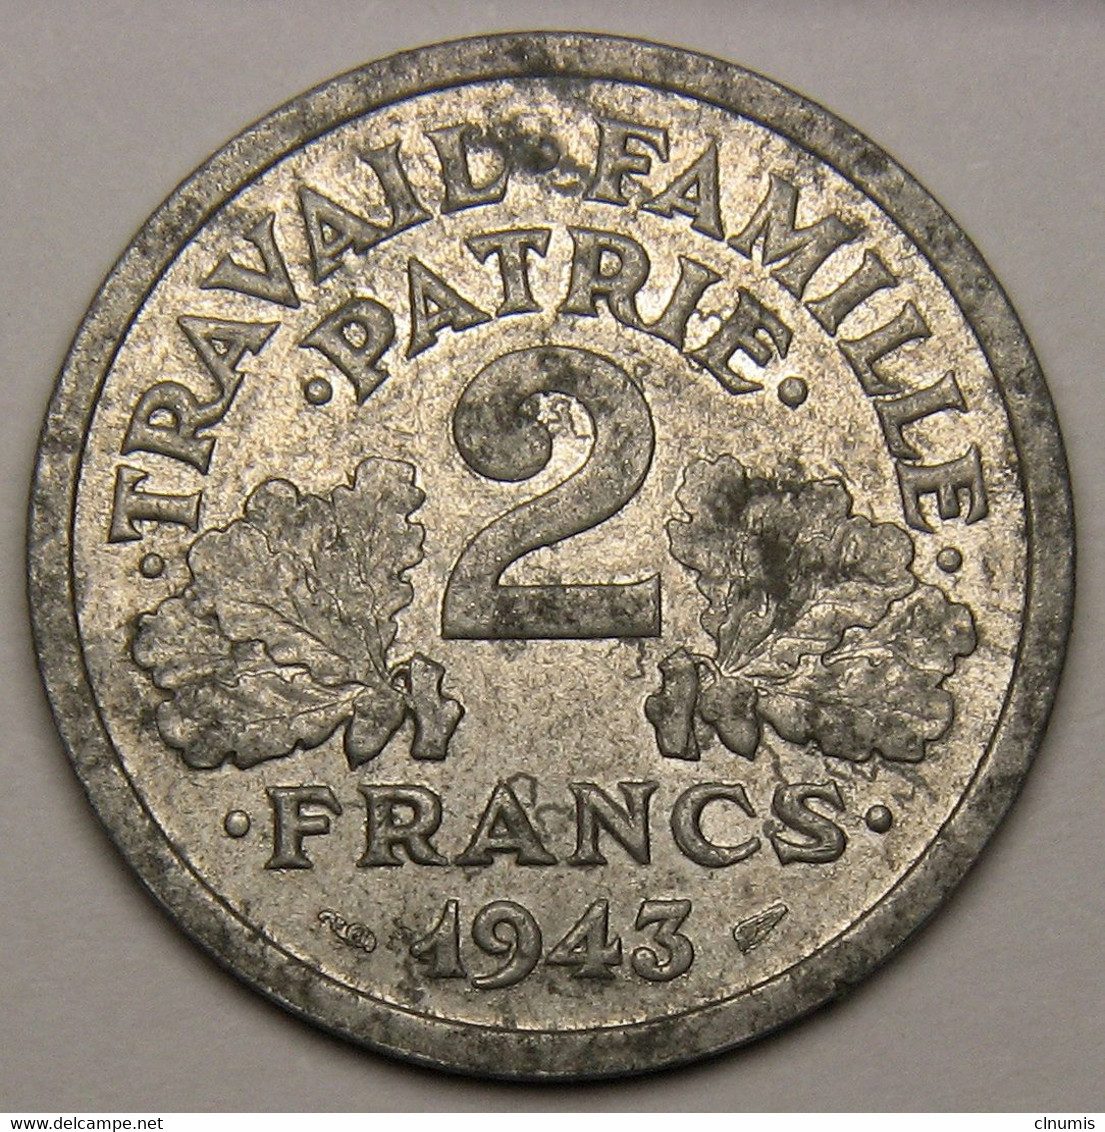 RARE 2 Francs Francisque, 1943 B (Beaumont-le-Roger), Aluminium - Etat Français - 2 Francs